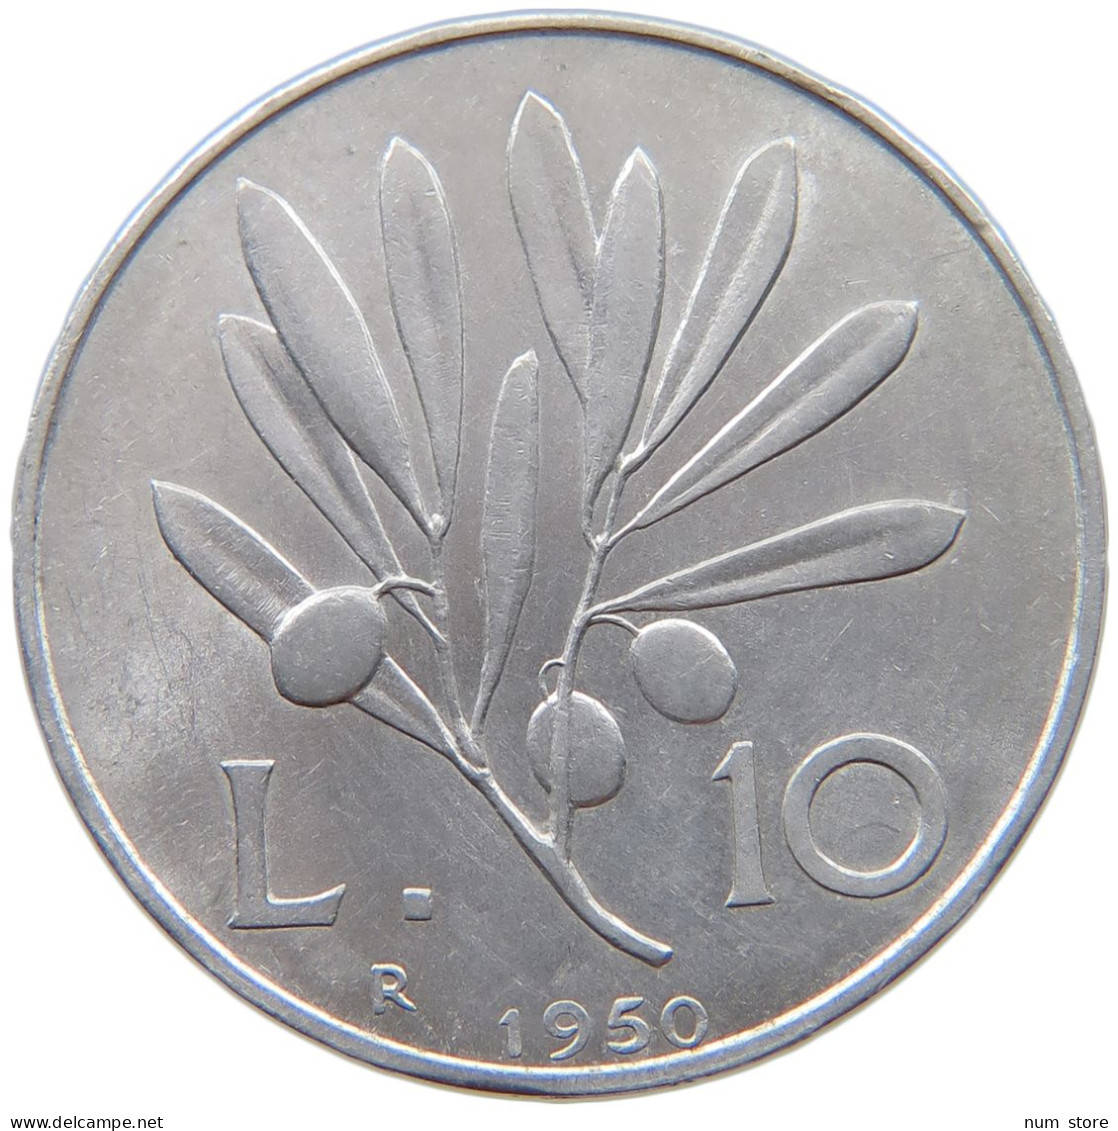 ITALY 10 LIRE 1950  #c061 0167 - 10 Lire